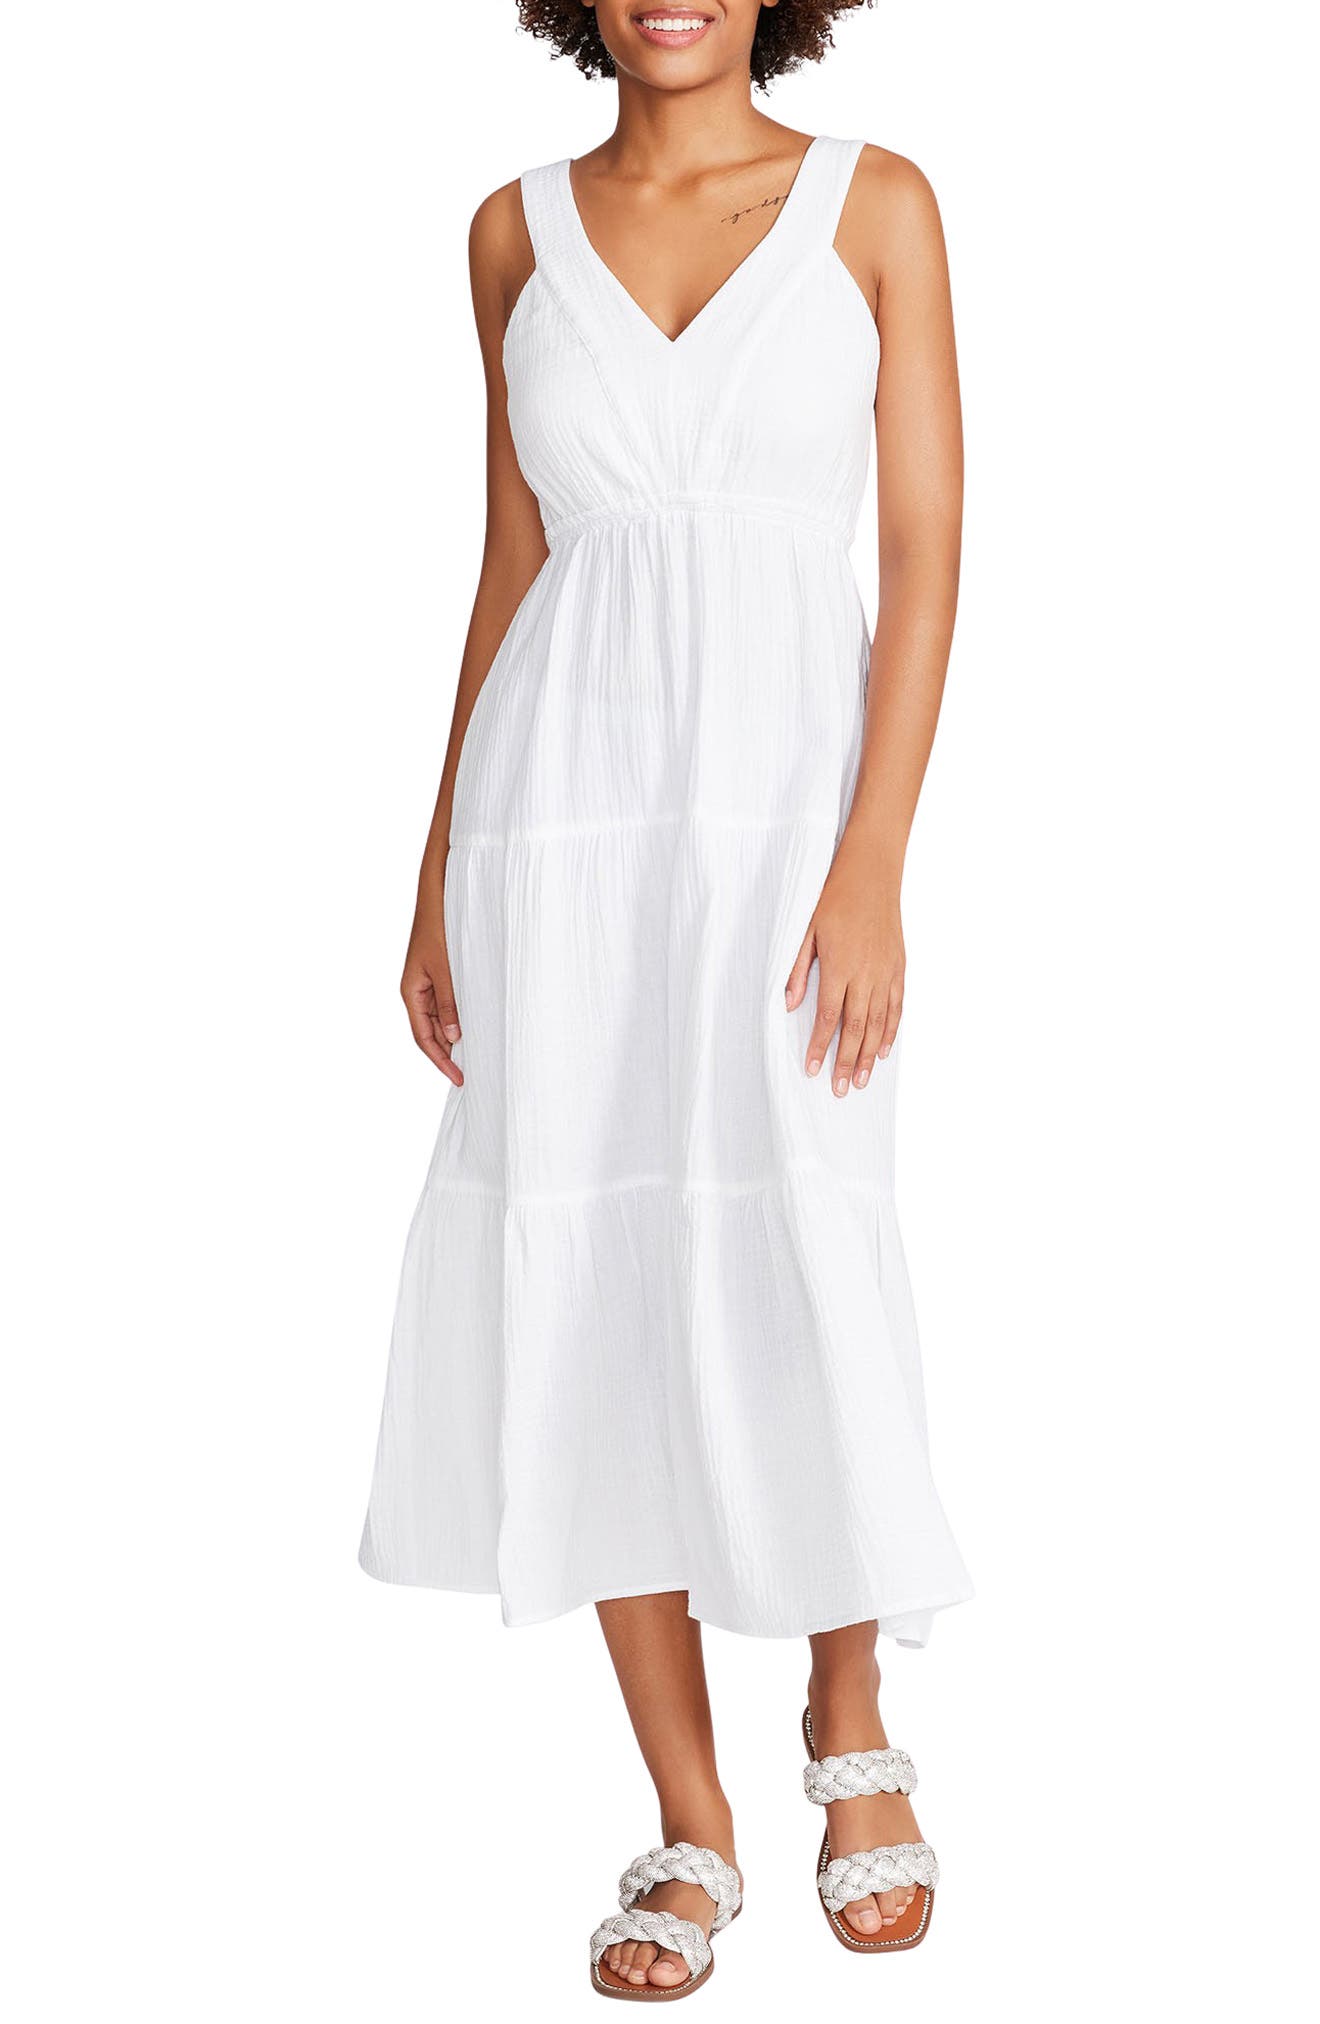 white dresses for women near me